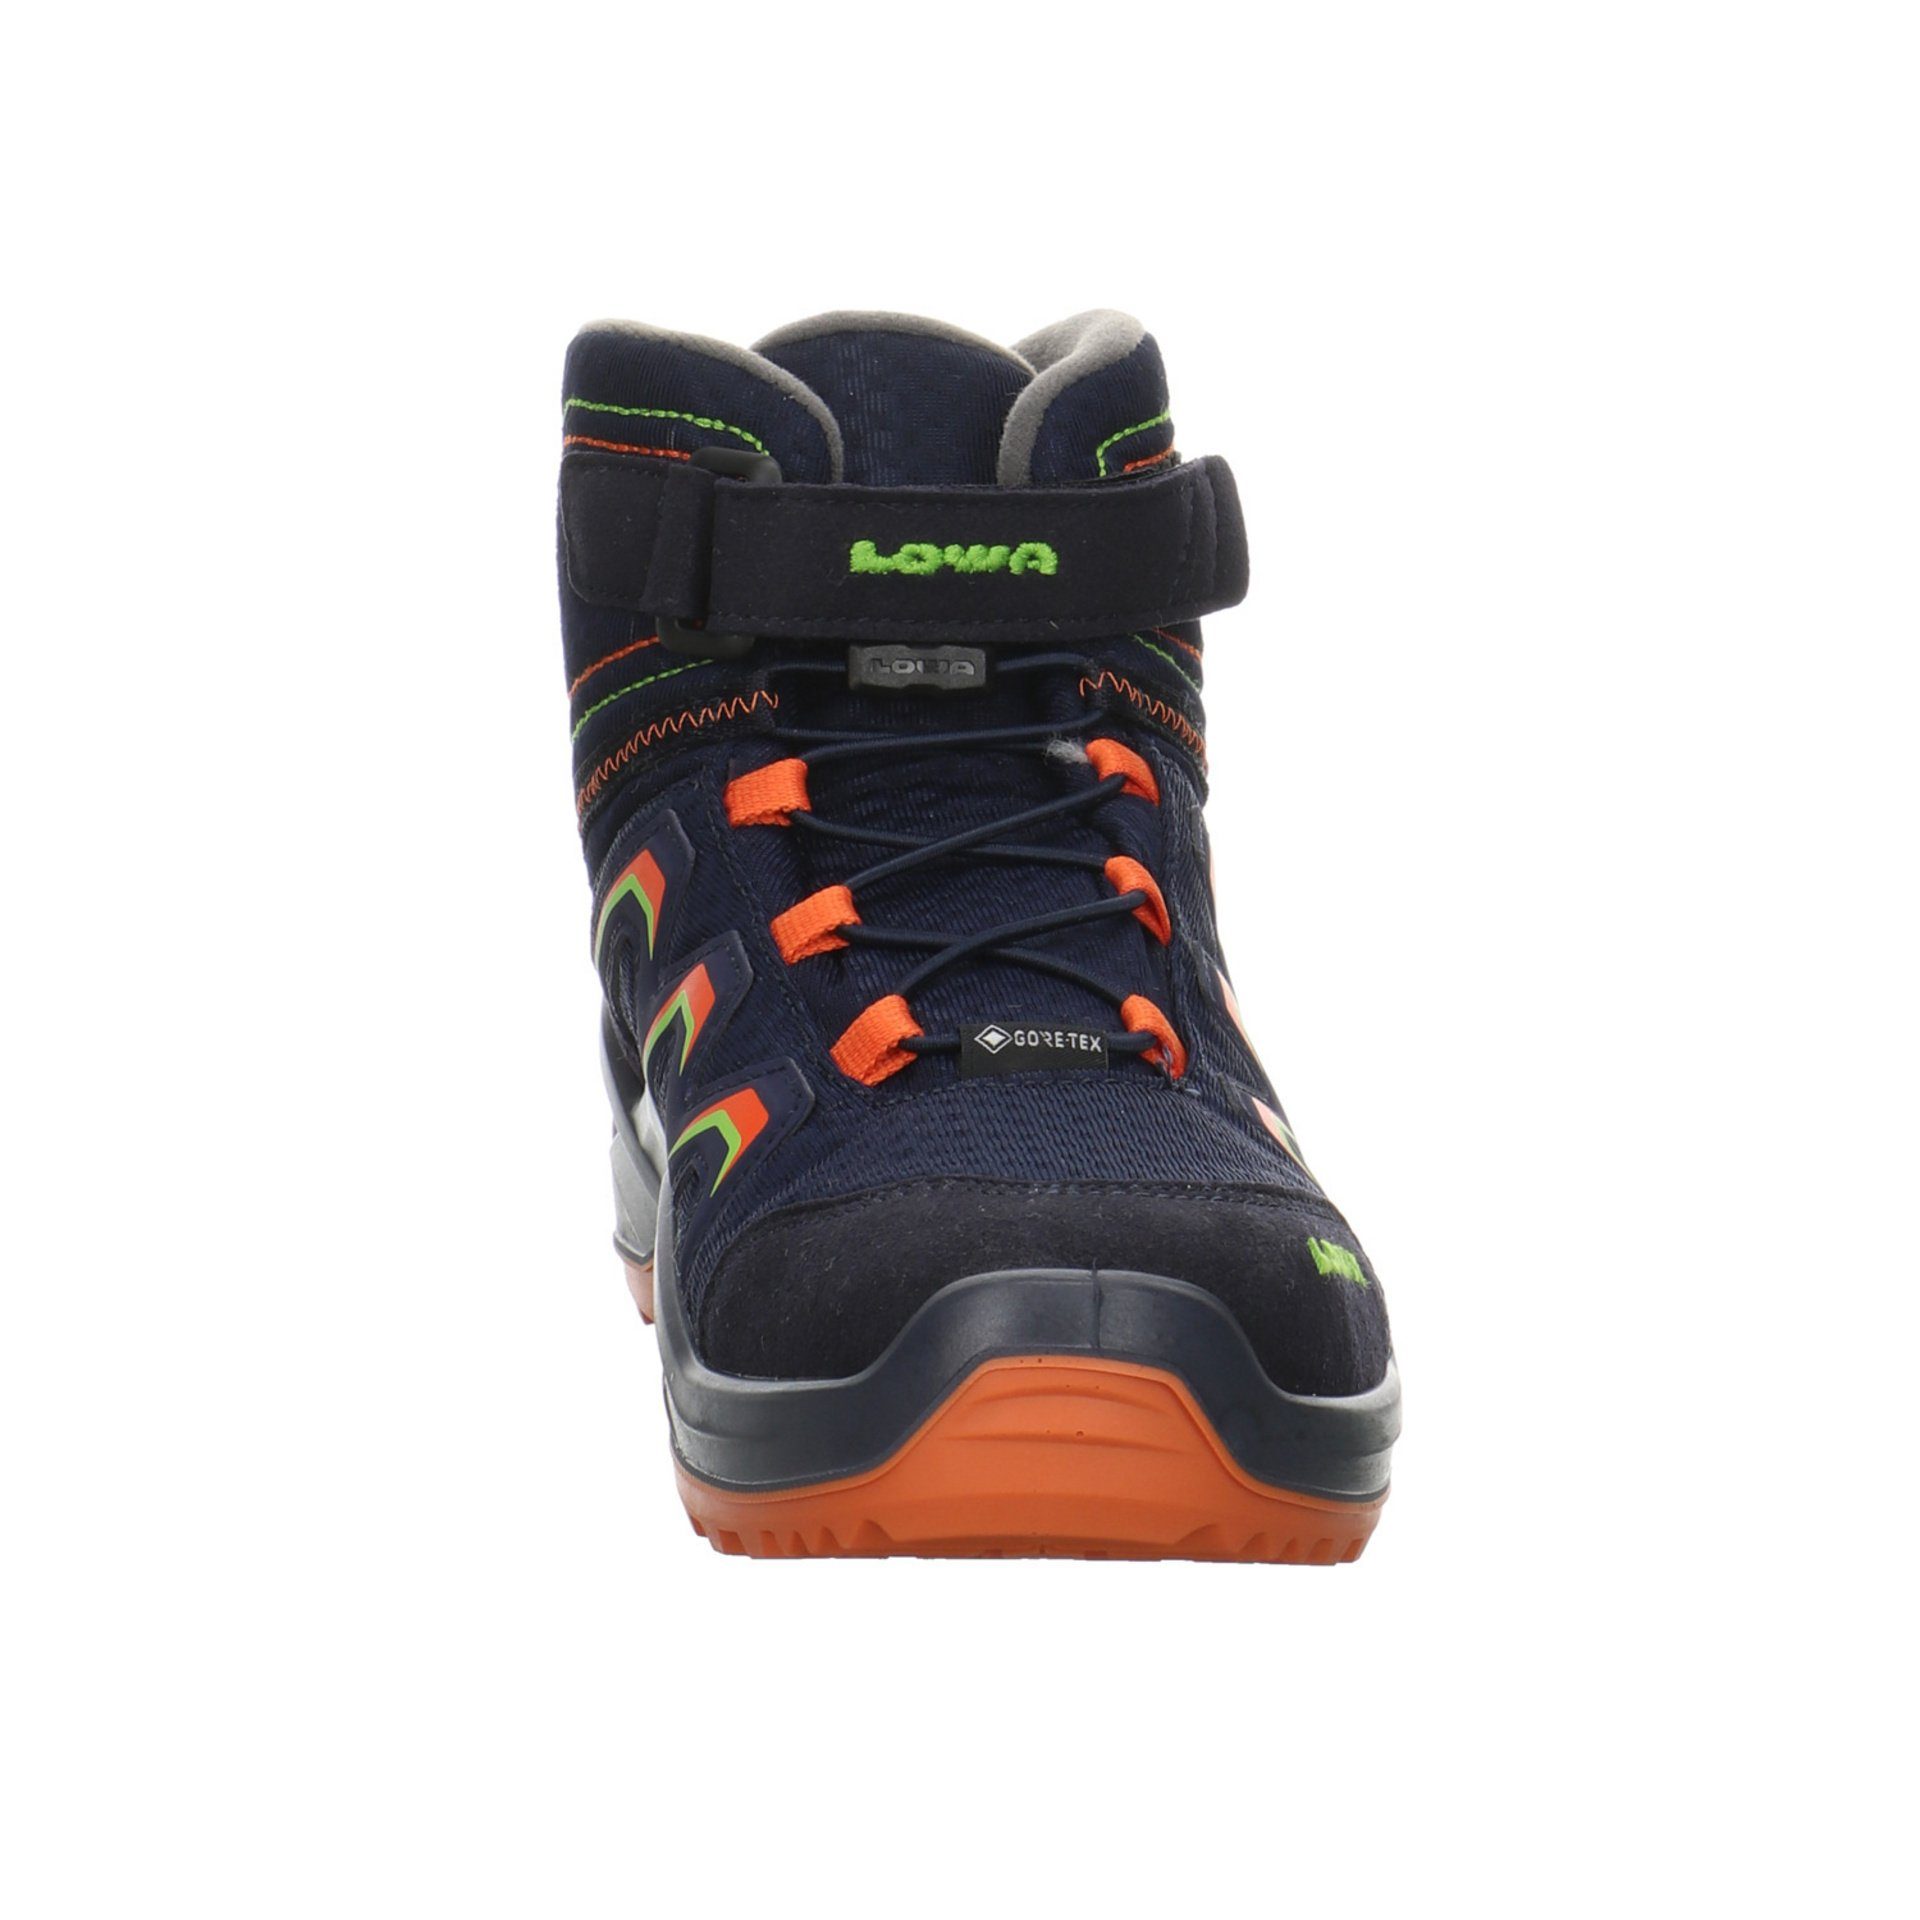 Textil Schuhe Maddox Stiefel Warm GTX navy/orange Jungen Boots Lowa Stiefel